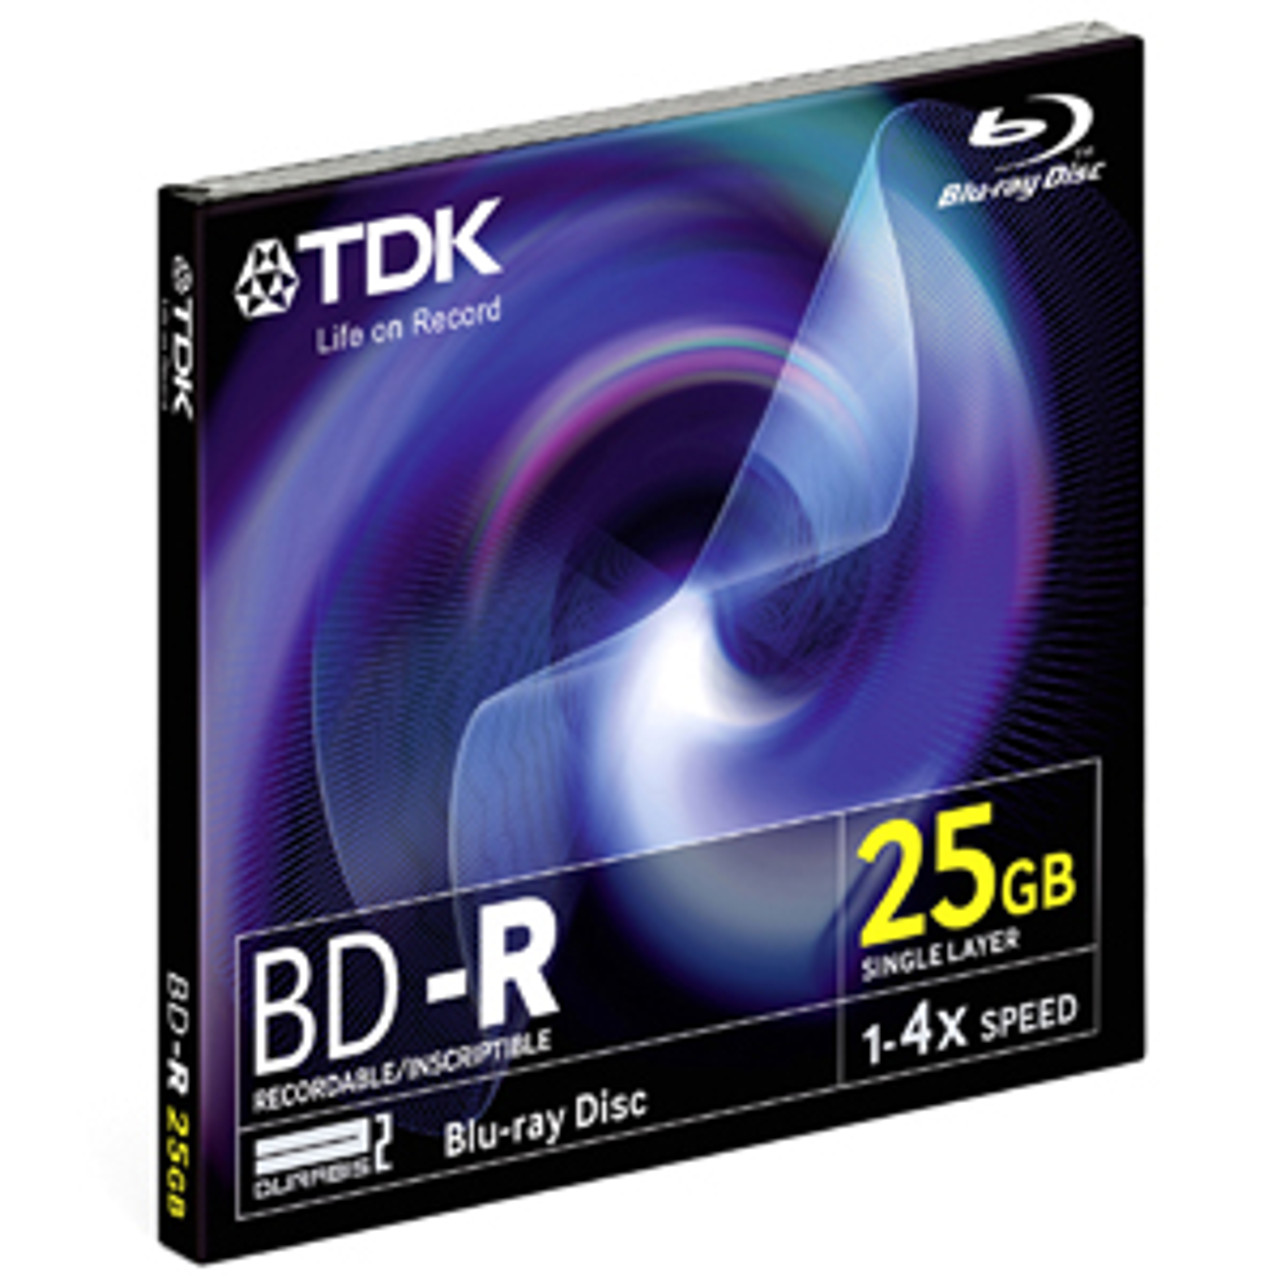 49019 - TDK 4x BD-R Media - 25GB - 120mm Standard - 1 Pack Jewel Case